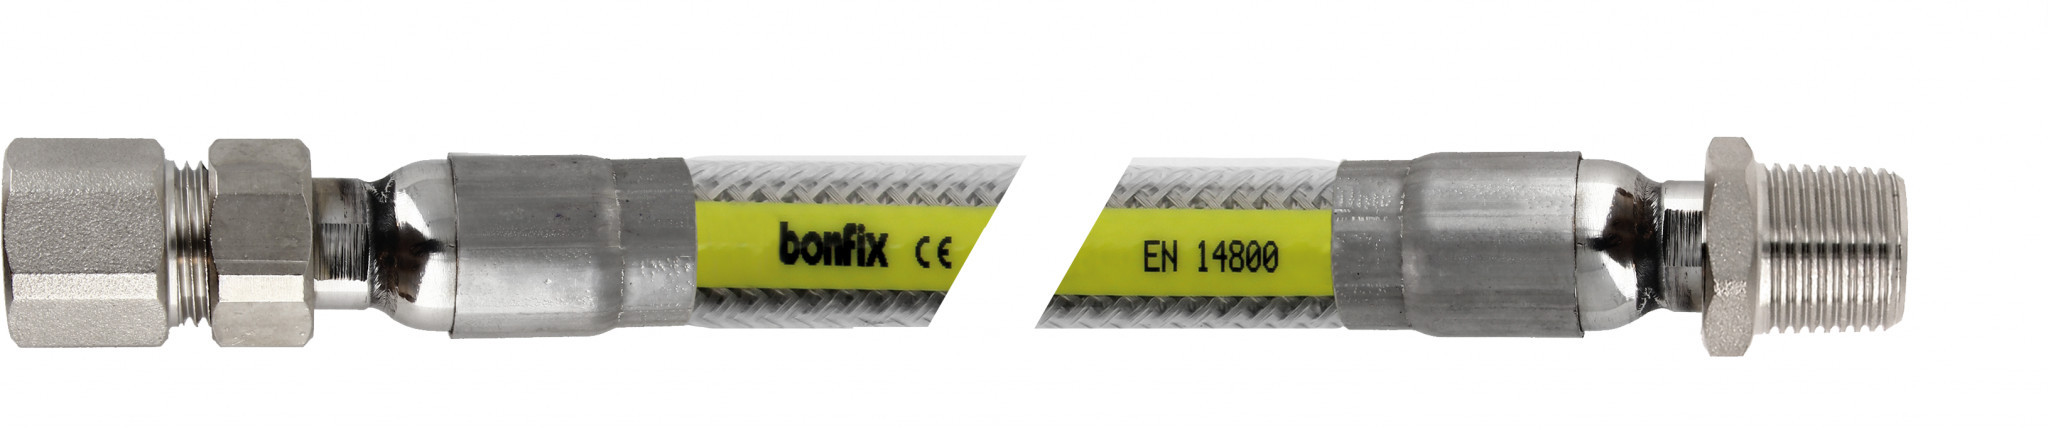 Bonfix Inox gasflexibels voor België Superieure RVS gasslang 100 cm - 1/2 binnendraad x 1/2 buitendraad